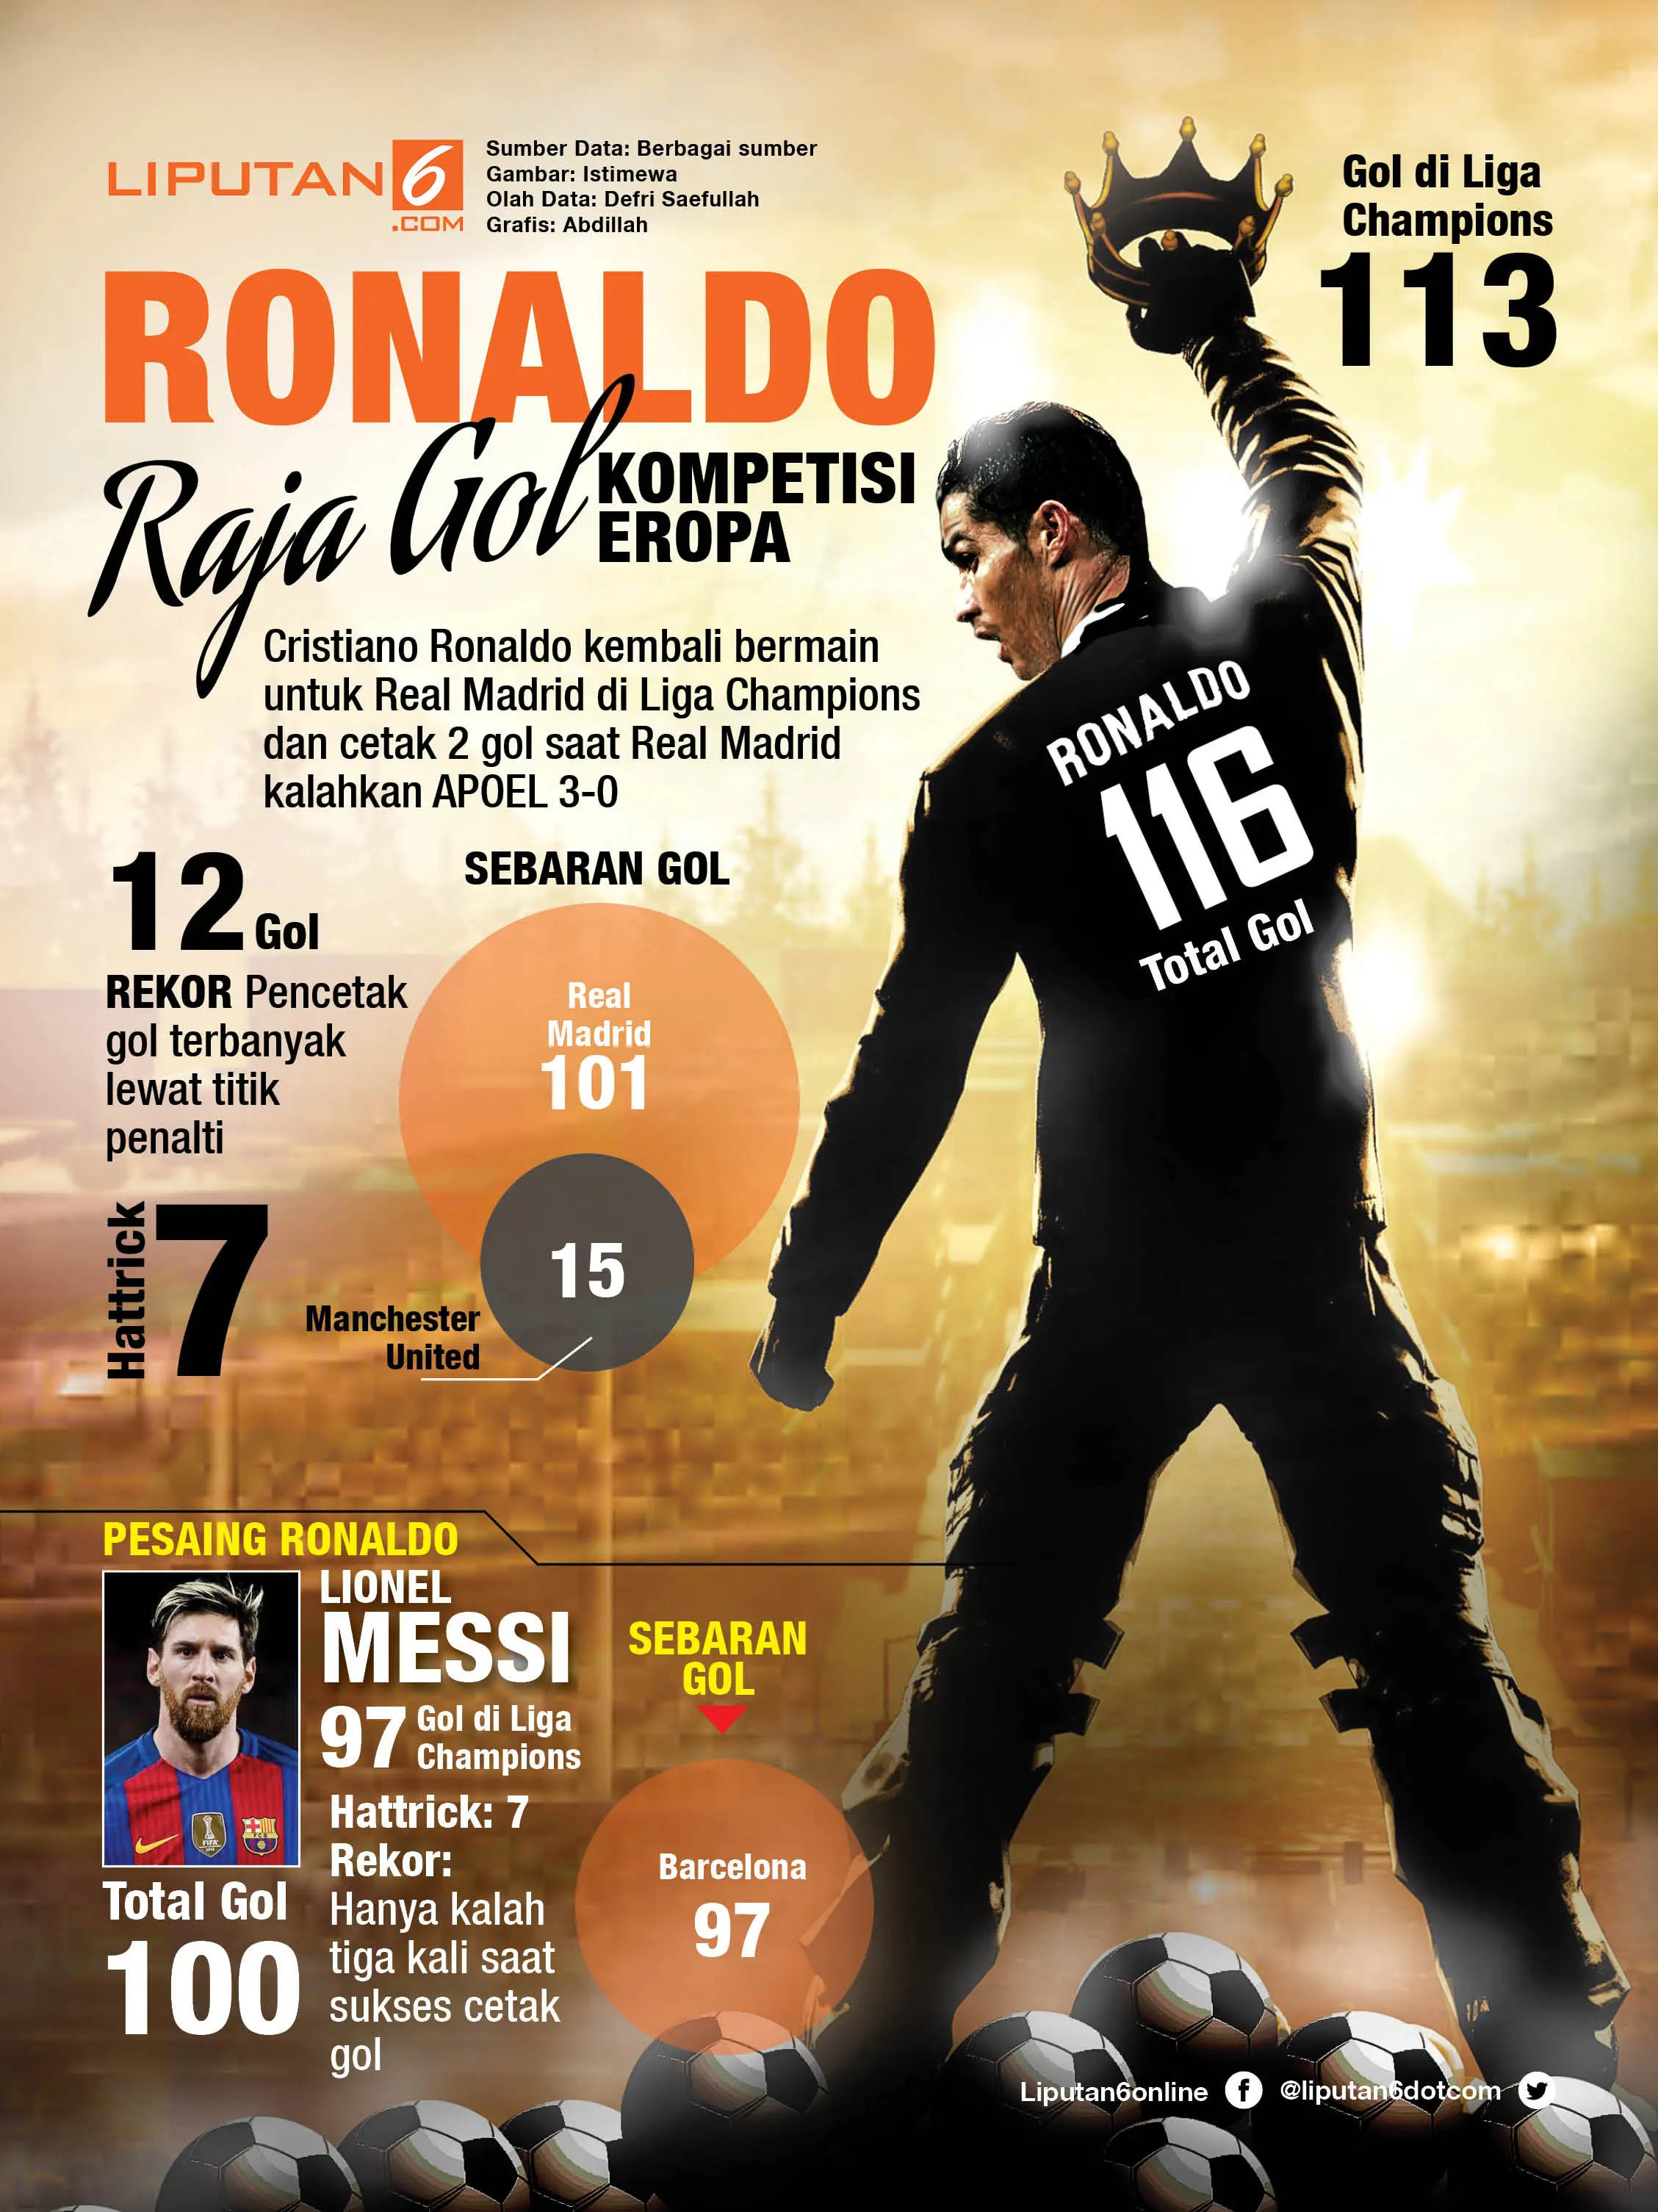 Ronaldo raja gol Eropa (Liputan6.com/Abdilleh)